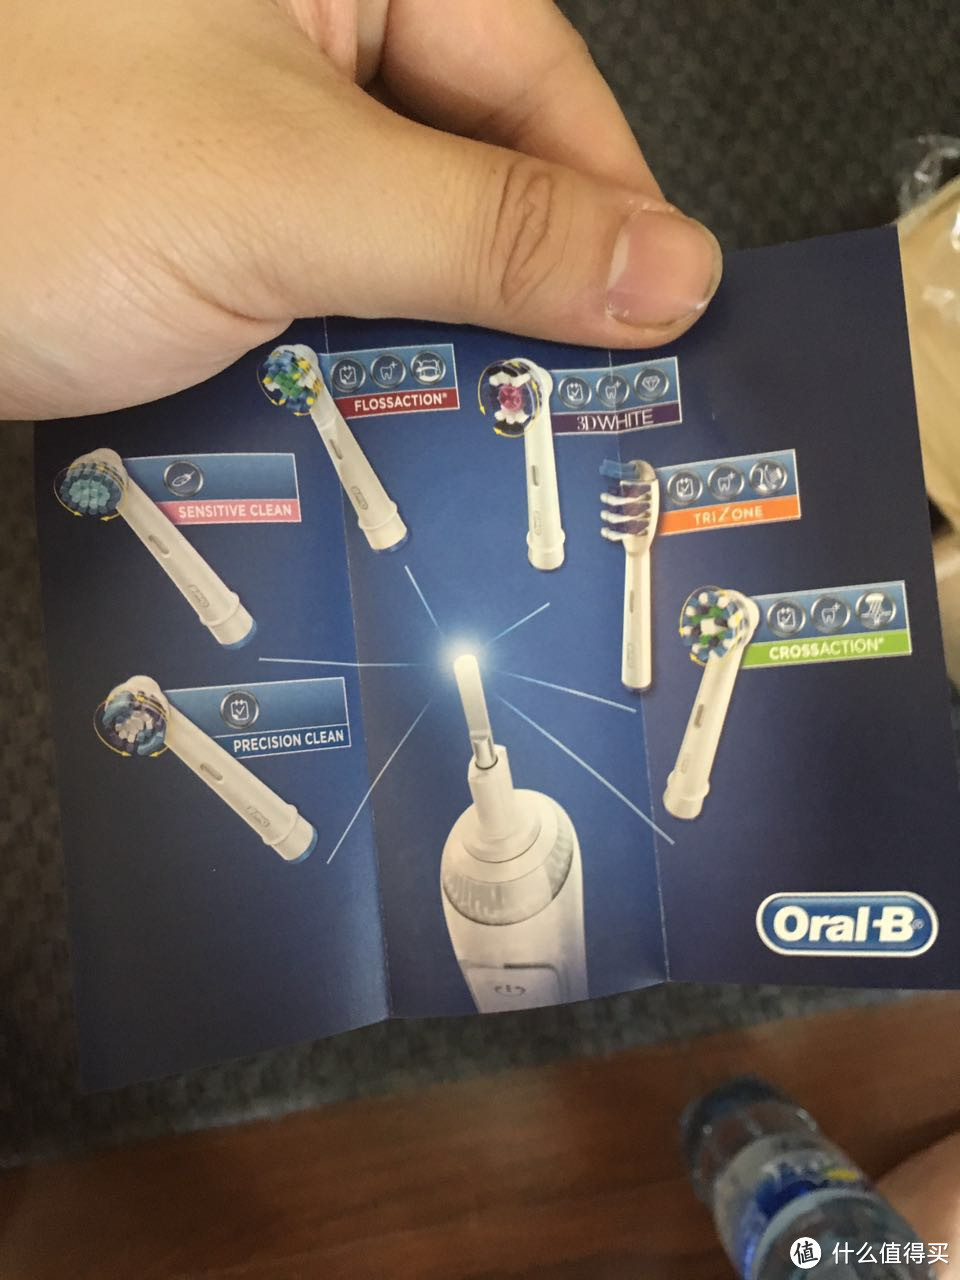 包装也是要看的：英亚 Oral-B 欧乐B Pro2500 电动牙刷开箱体验